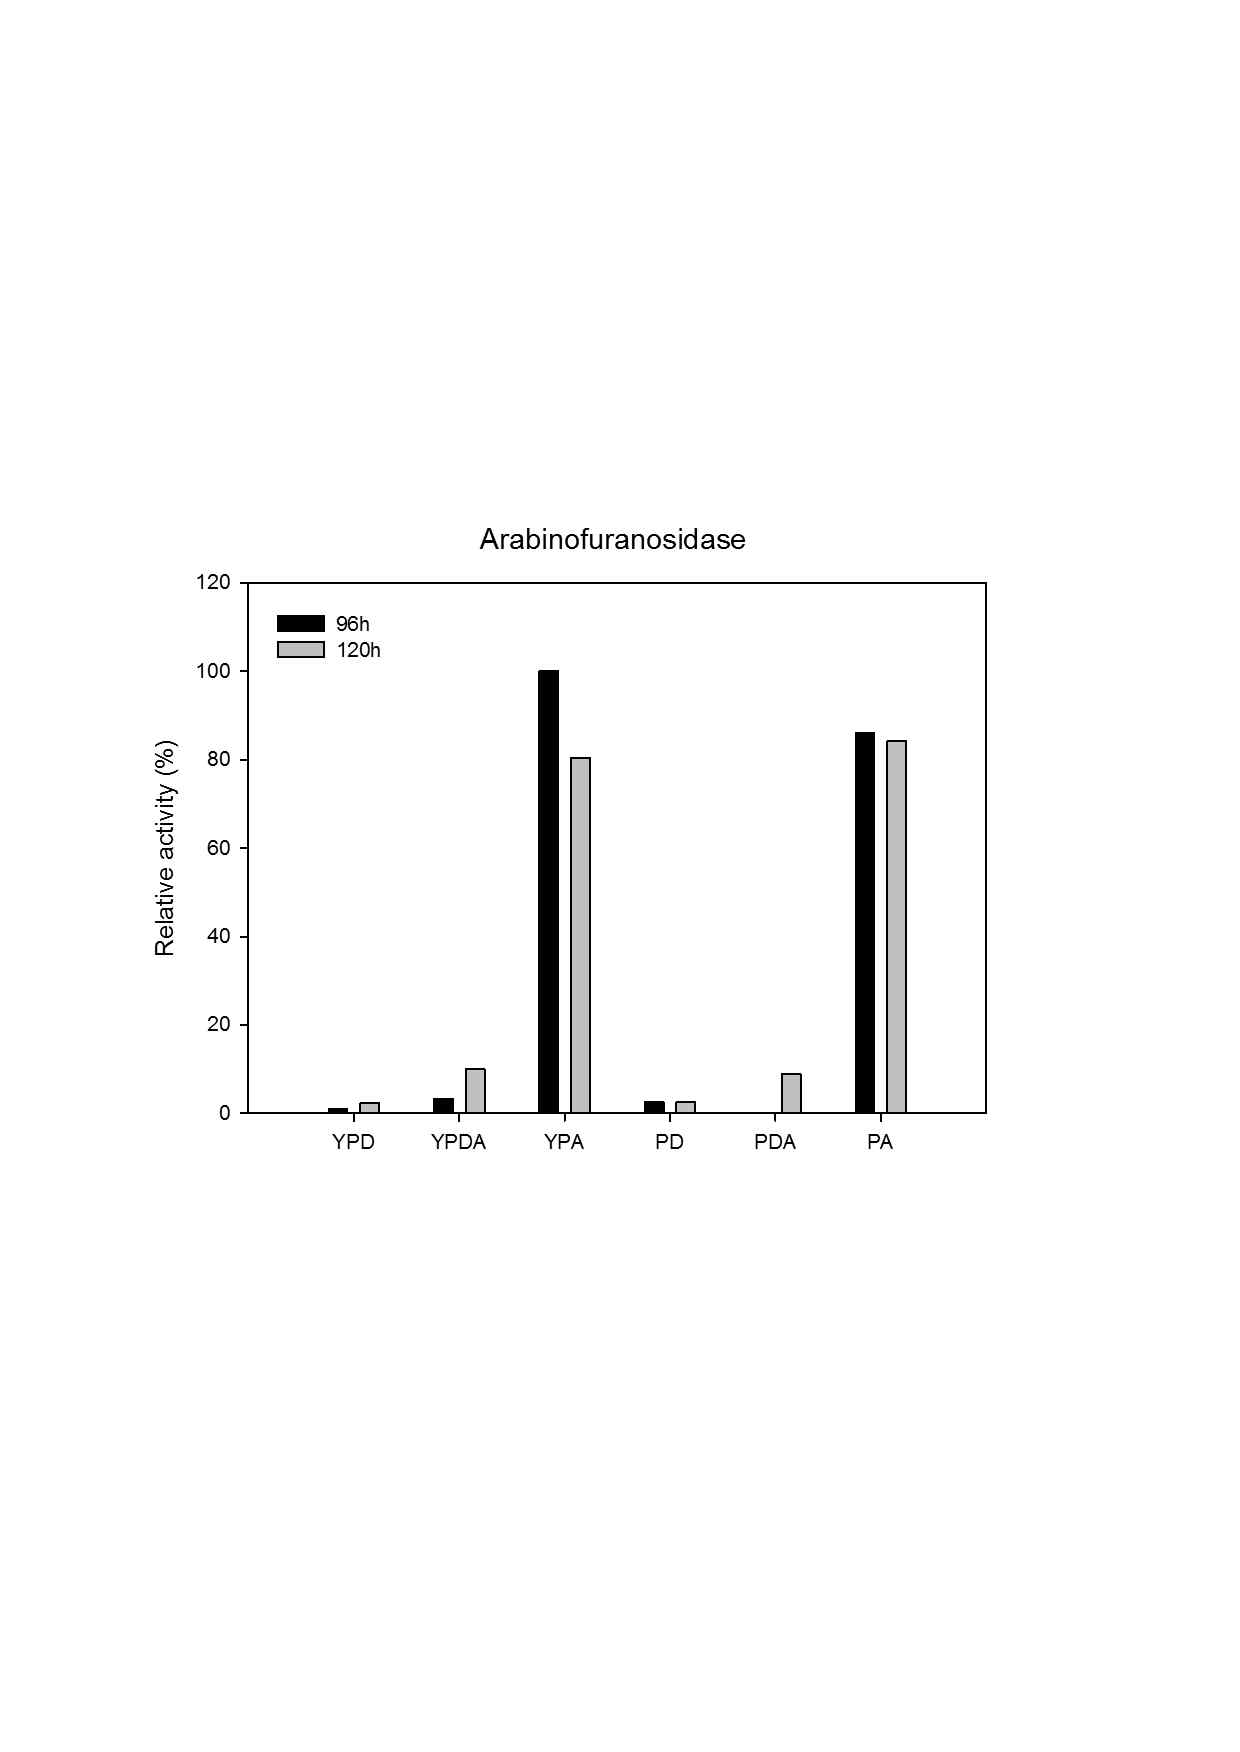 174번 효모의 배양 배지 조성에 따른 arabinofuranosidase activity 측정